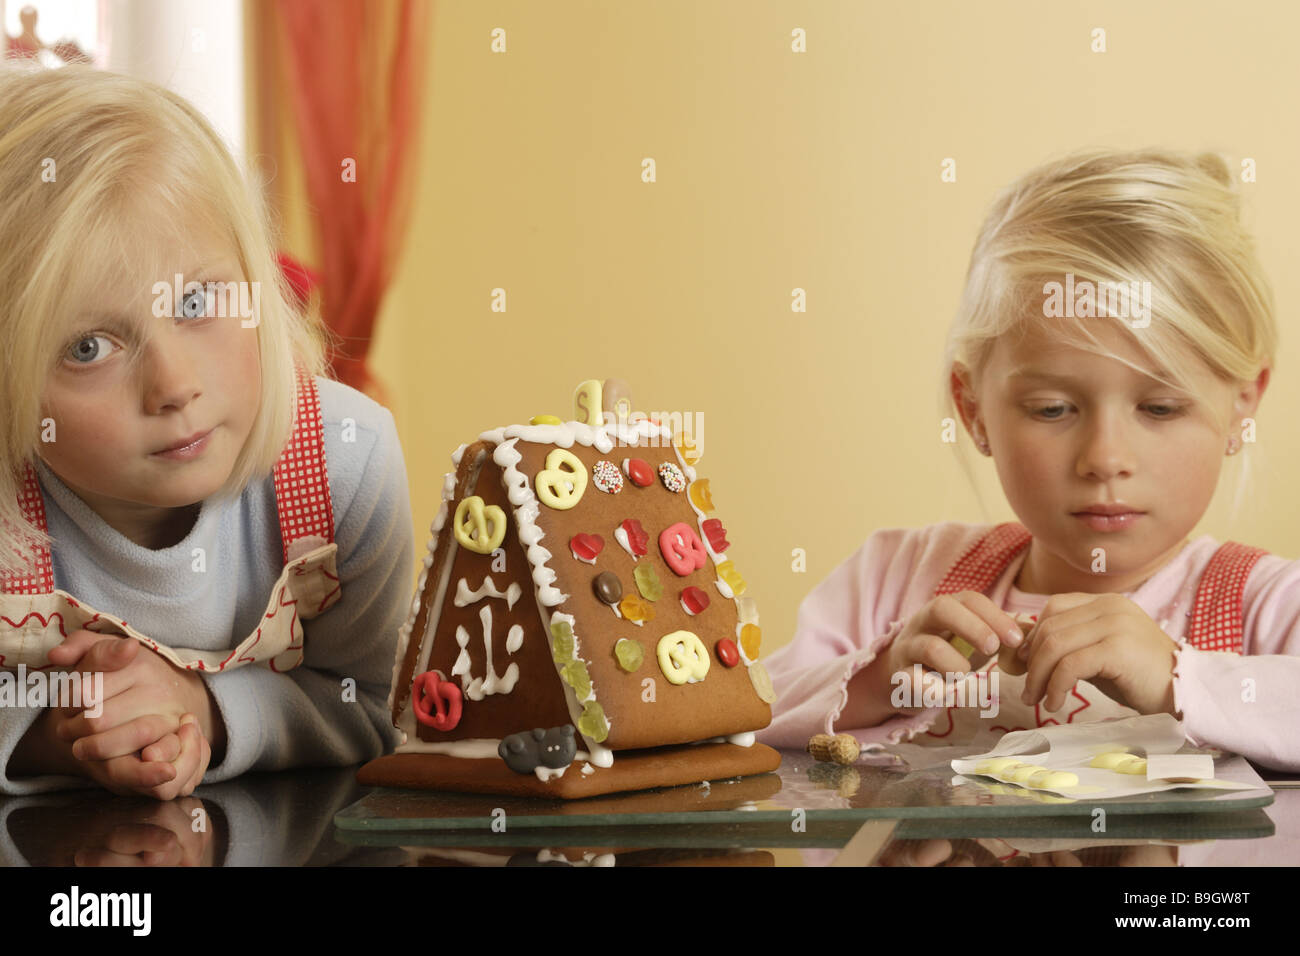 Deux fille avent gingerbread-chambre de l'artisanat Banque D'Images